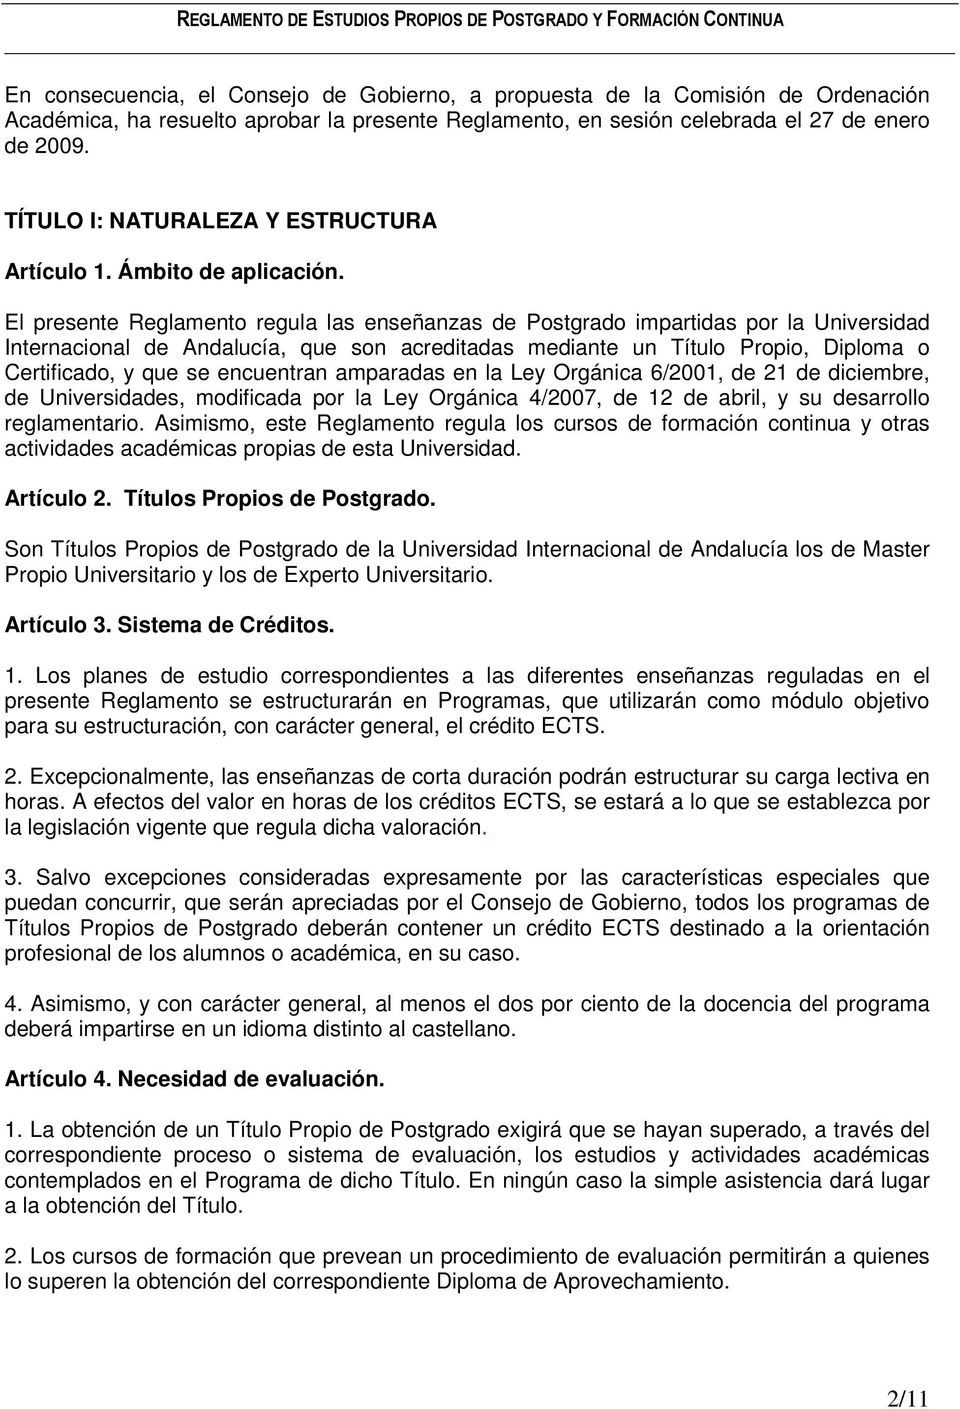 El presente Reglamento regula las enseñanzas de Postgrado impartidas por la Universidad Internacional de Andalucía, que son acreditadas mediante un Título Propio, Diploma o Certificado, y que se